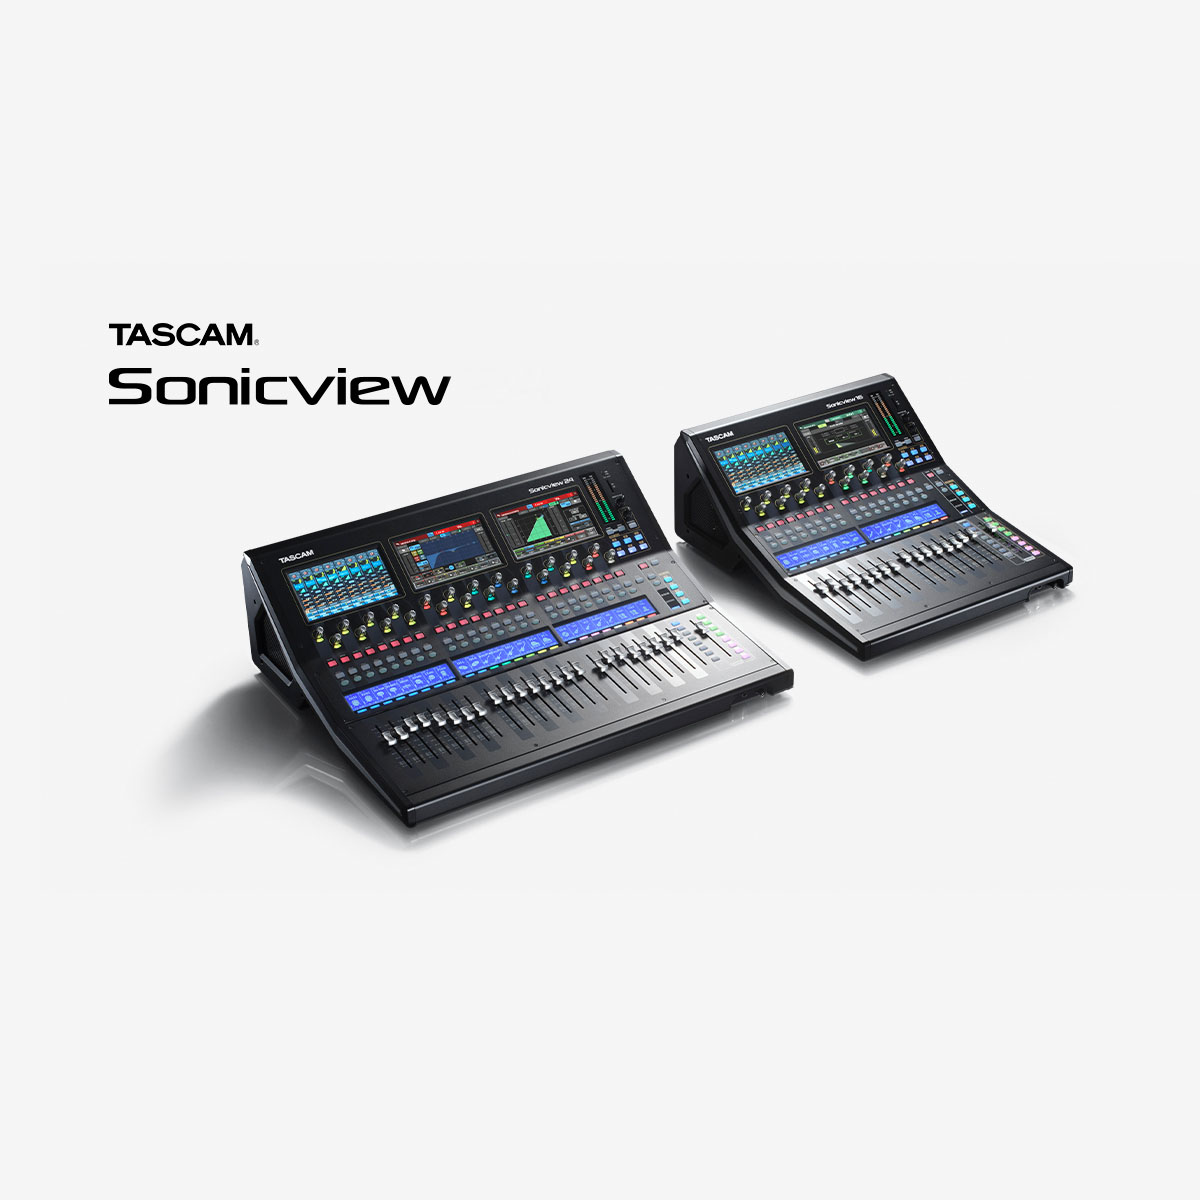 Serie TASCAM Sonicview XP - Lanzado nuevo firmware y software